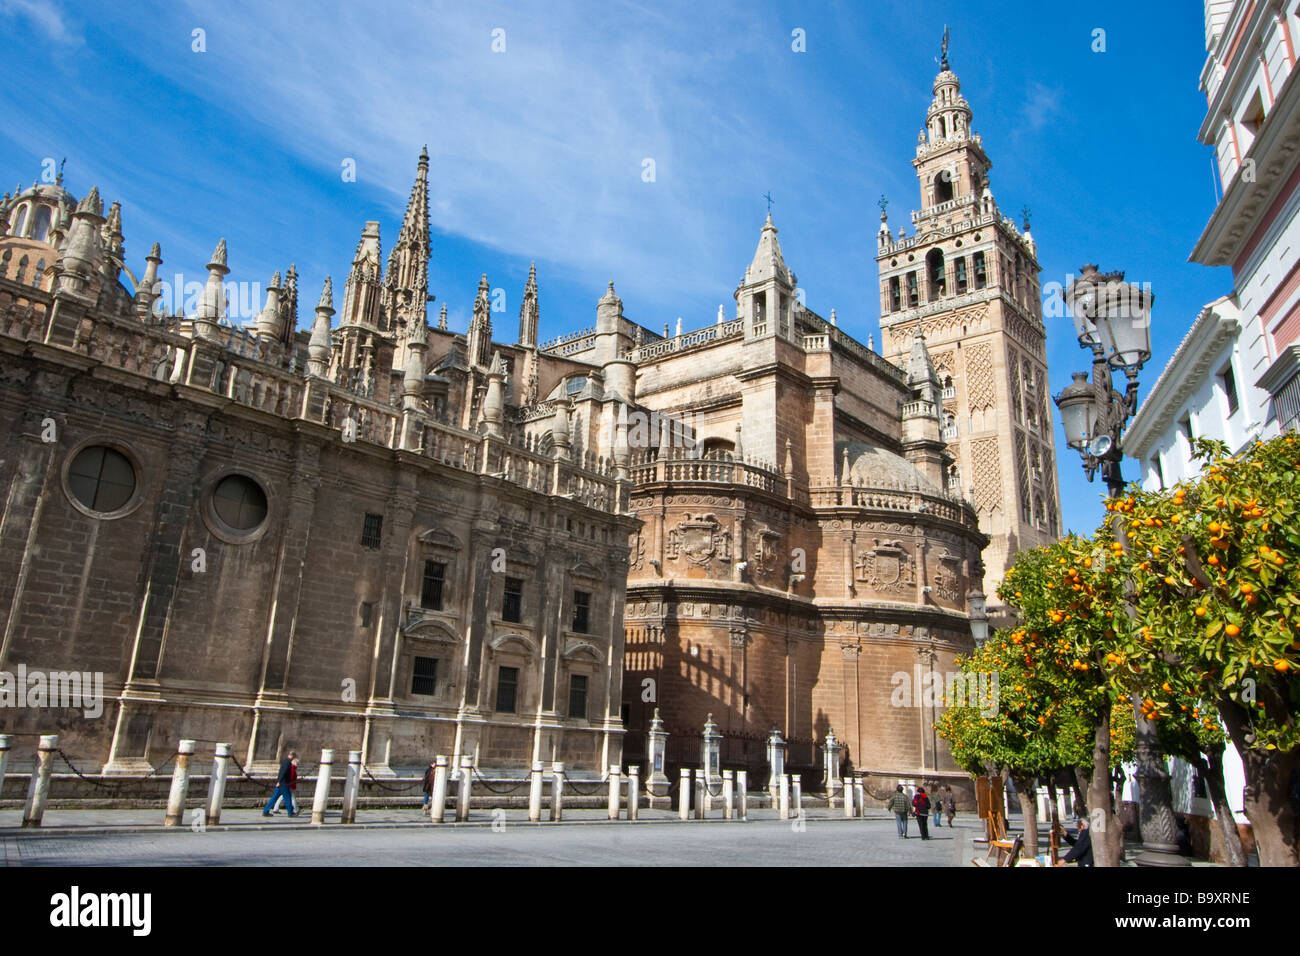 Cathedral of Seville or the Catedral de Santa María de la Sede in Seville Spain Stock Photo